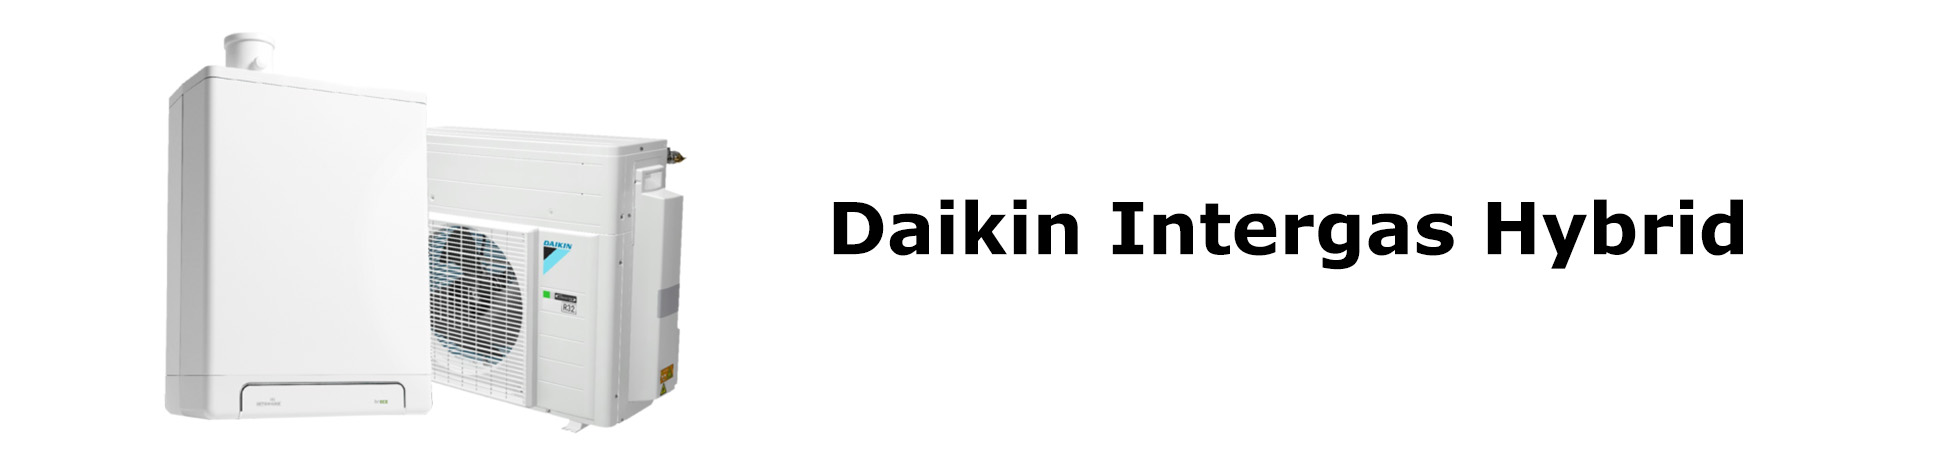 Daikin intergas hybrid